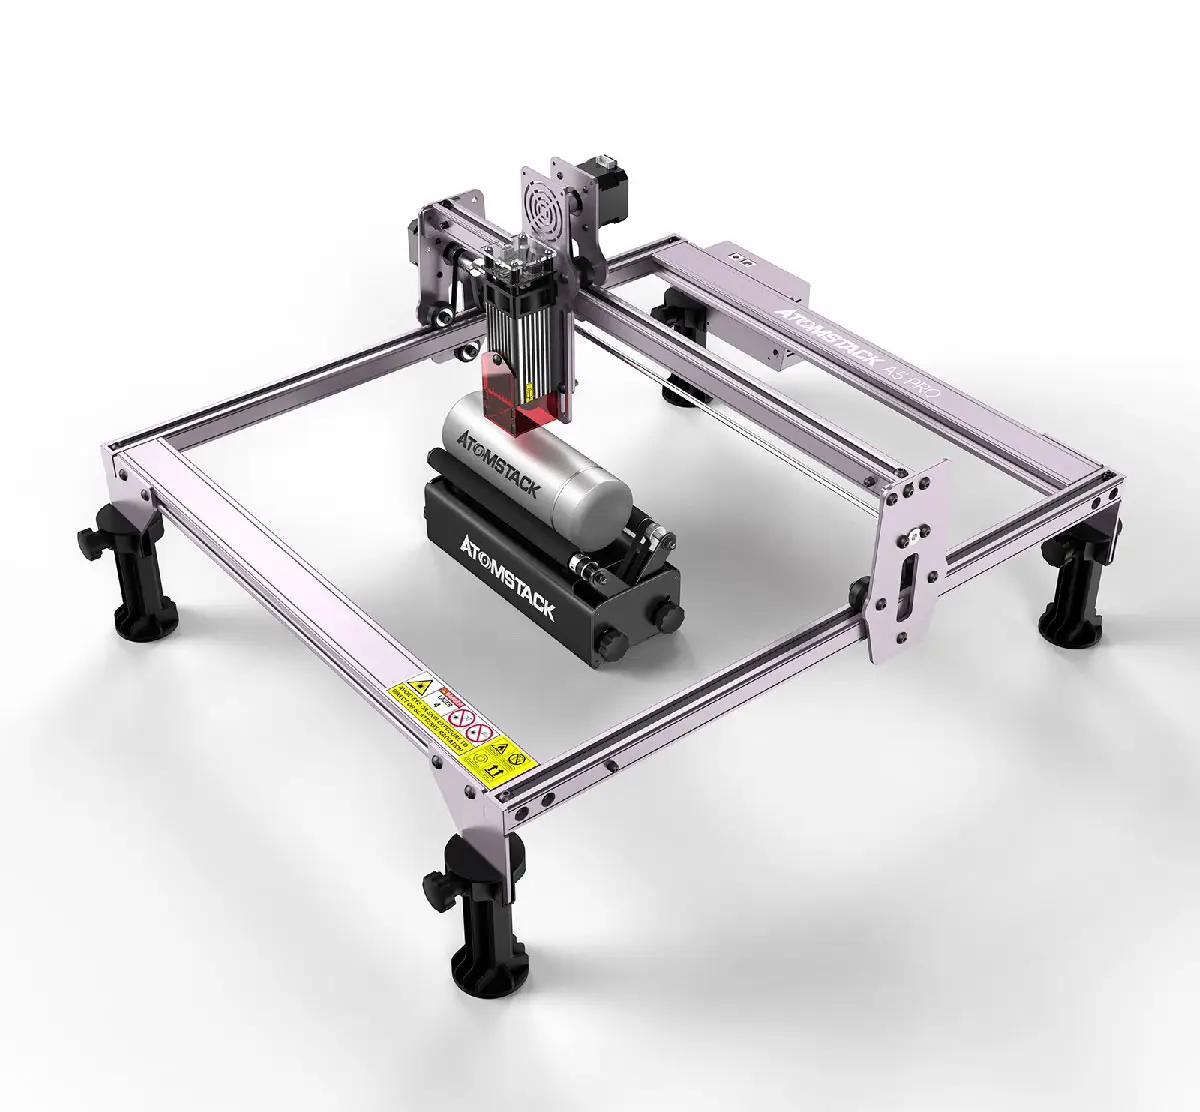 ATOMSTACK A5 PRO 40W macchina per incisione Laser stampante per incisore Lazer con rullo rotante asse Y per lattine uova cilindri tazza bottiglia